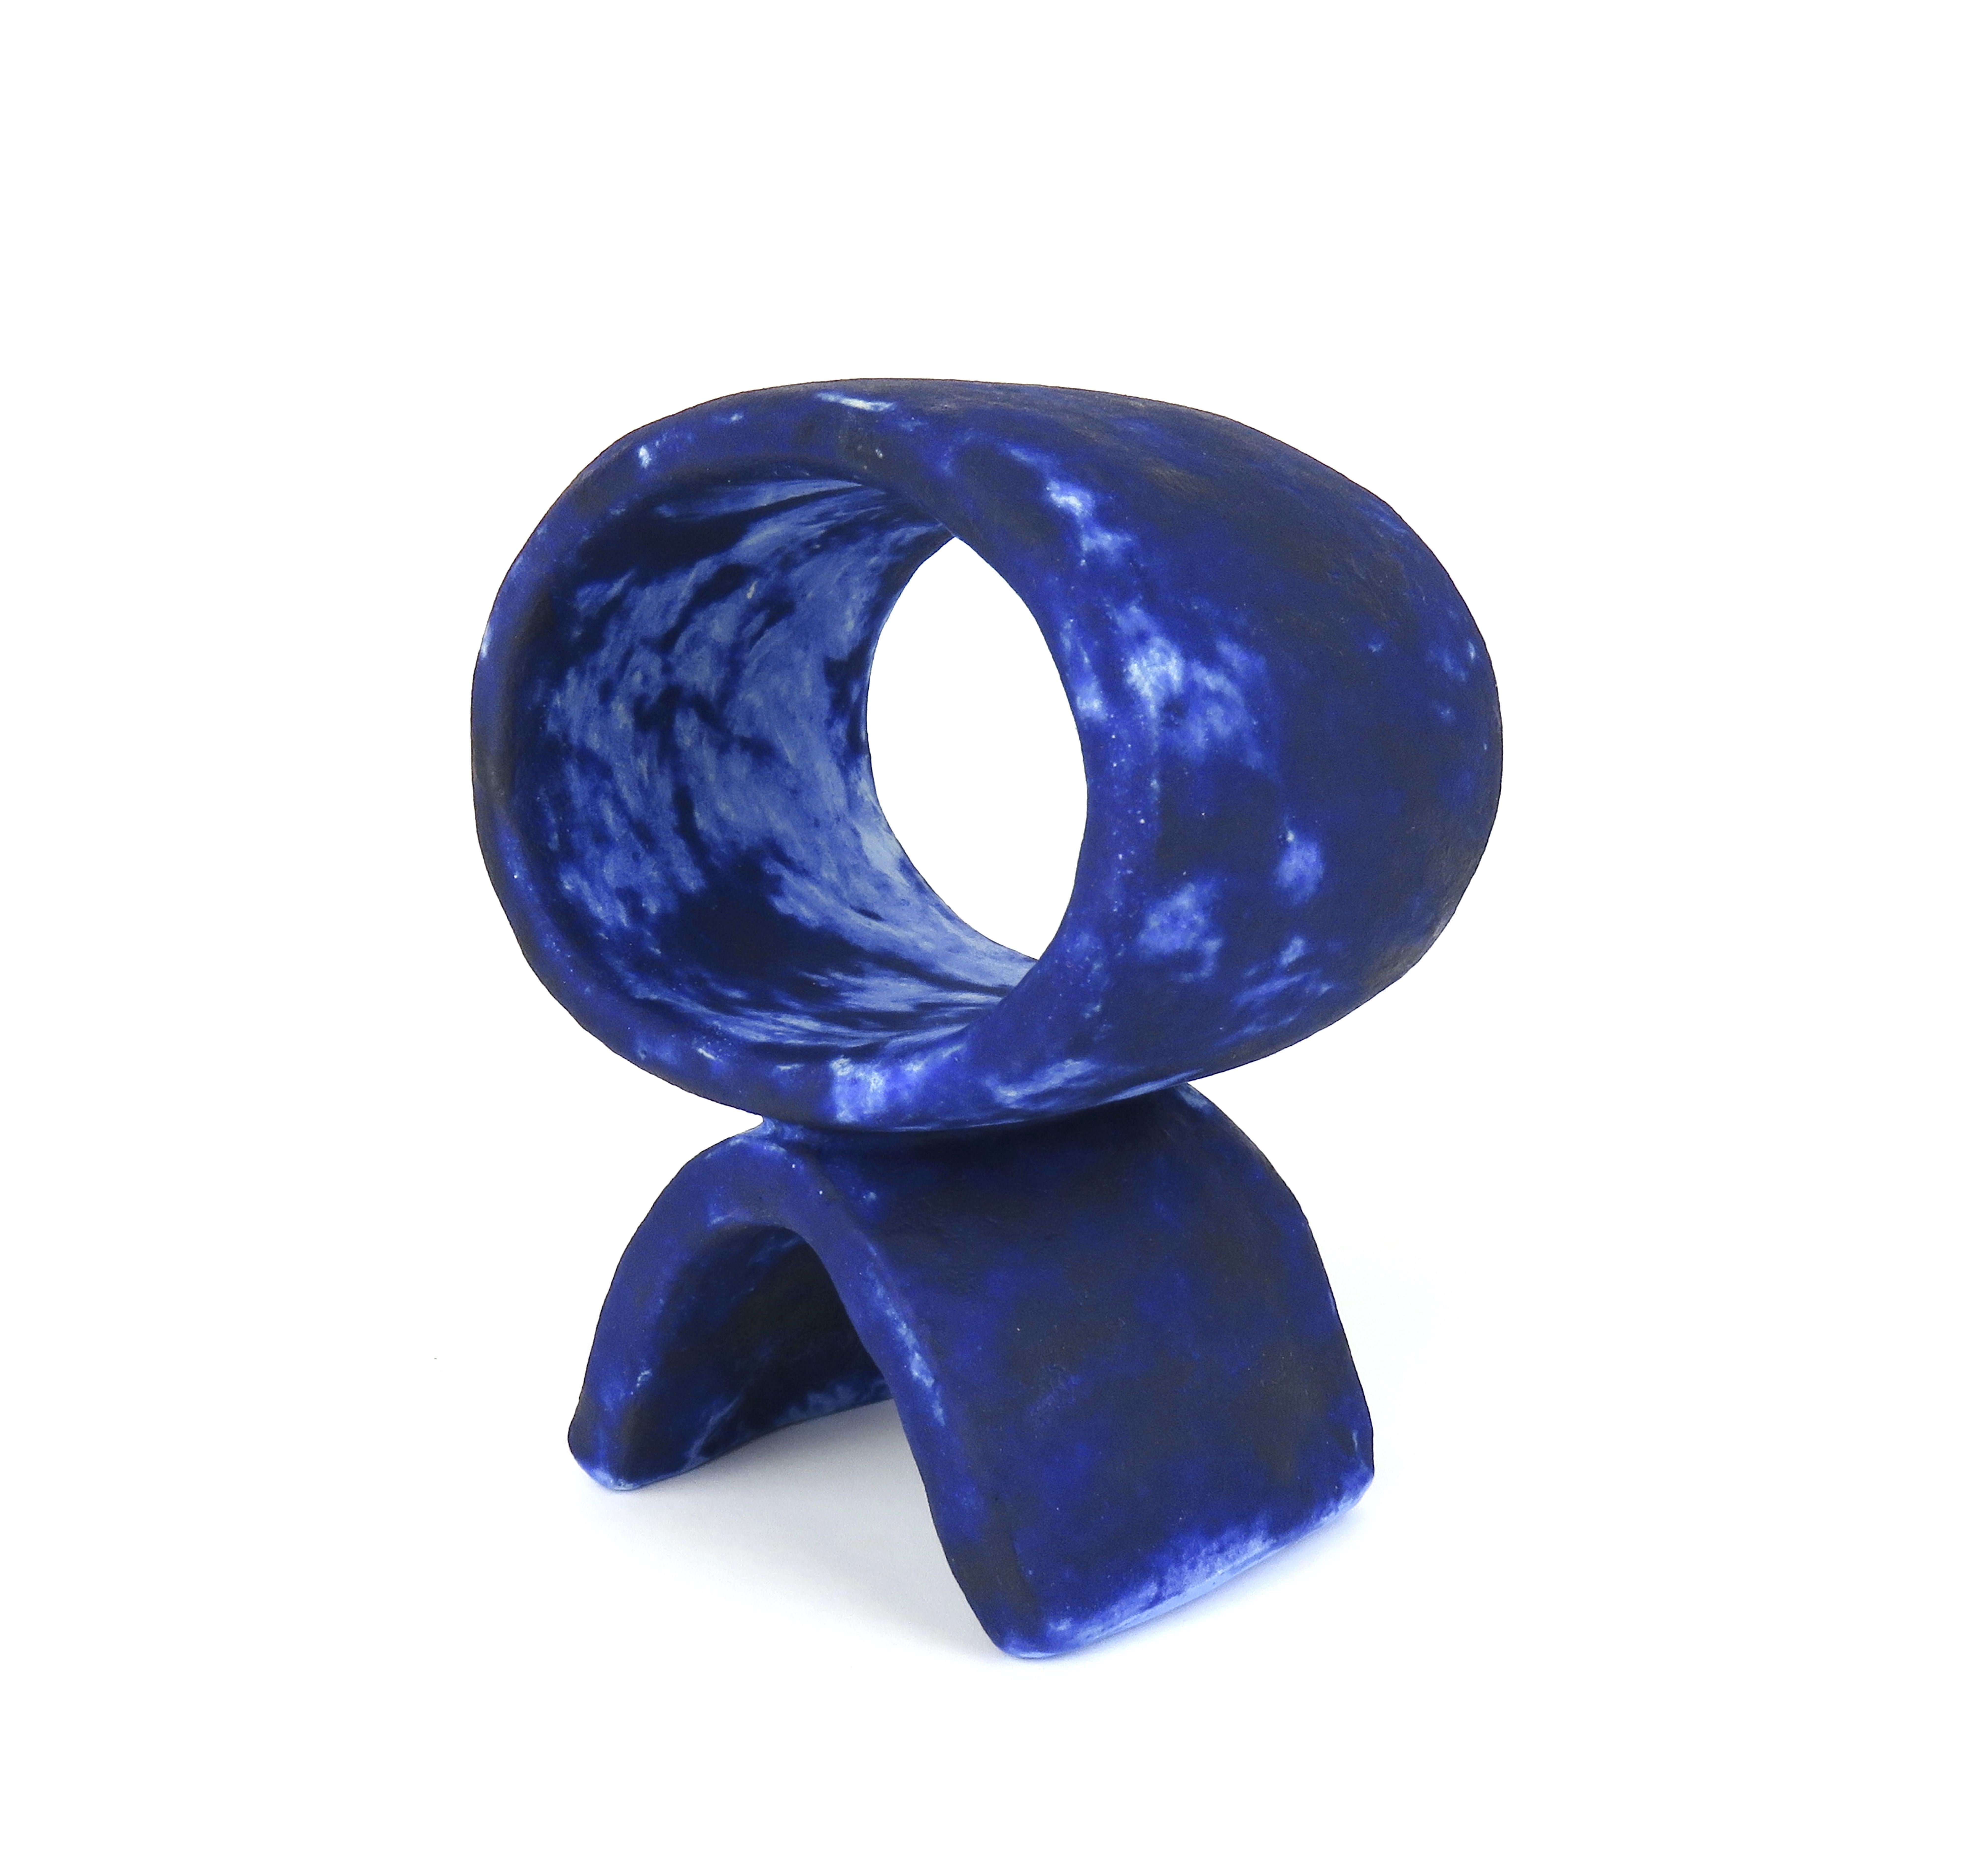 Totem en céramique mouchetée de bleu profond, fabriqué à la main, large ovale sur pied incurvé